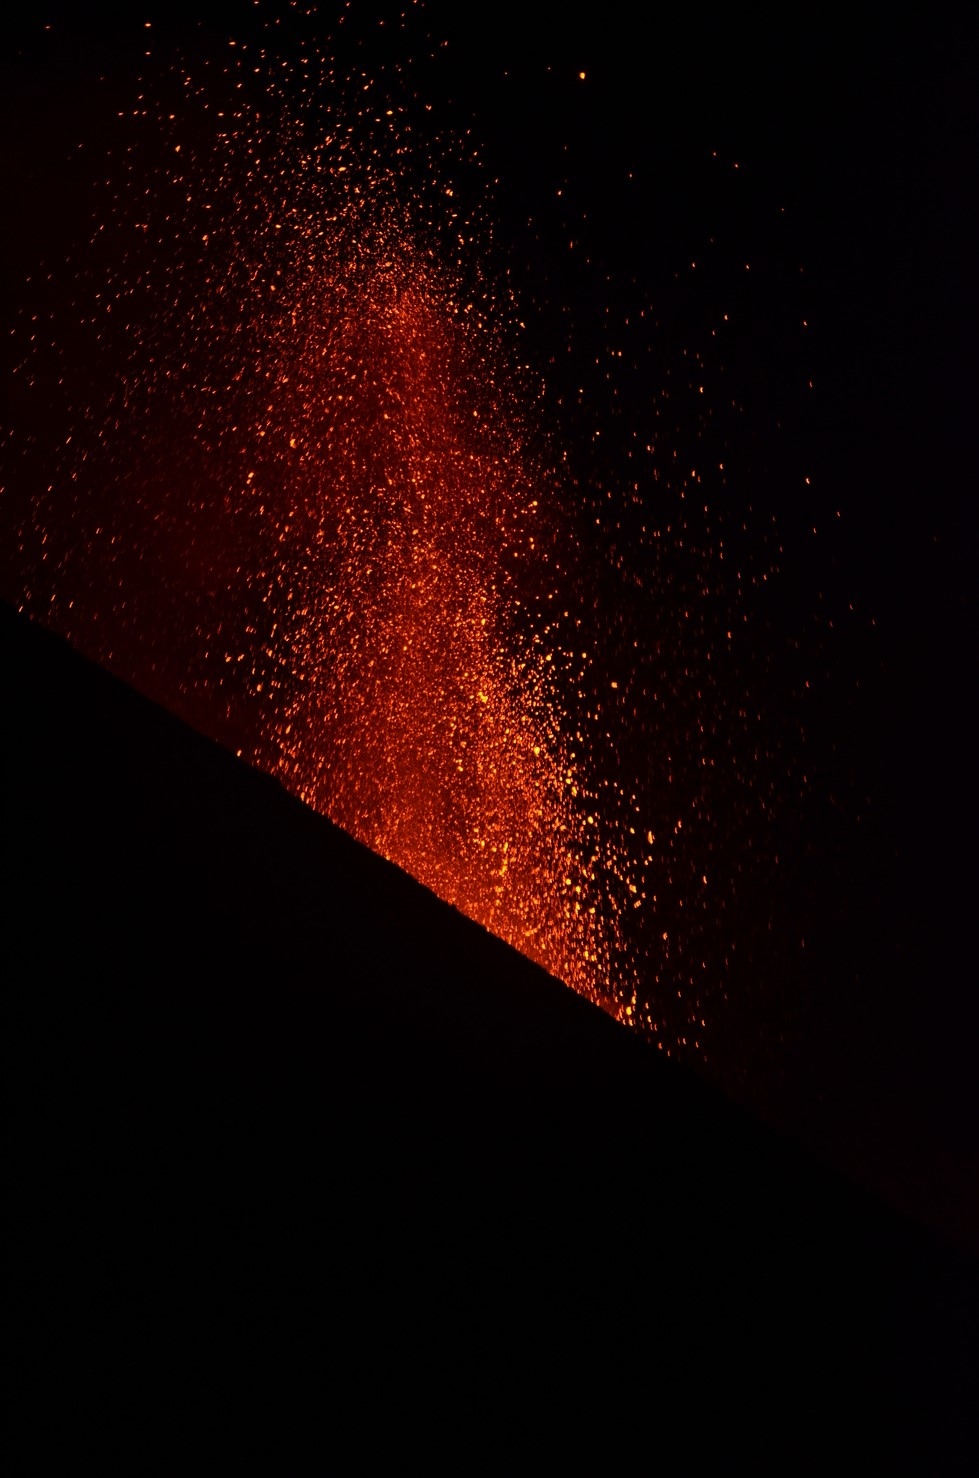 Volcano Stromboli in action